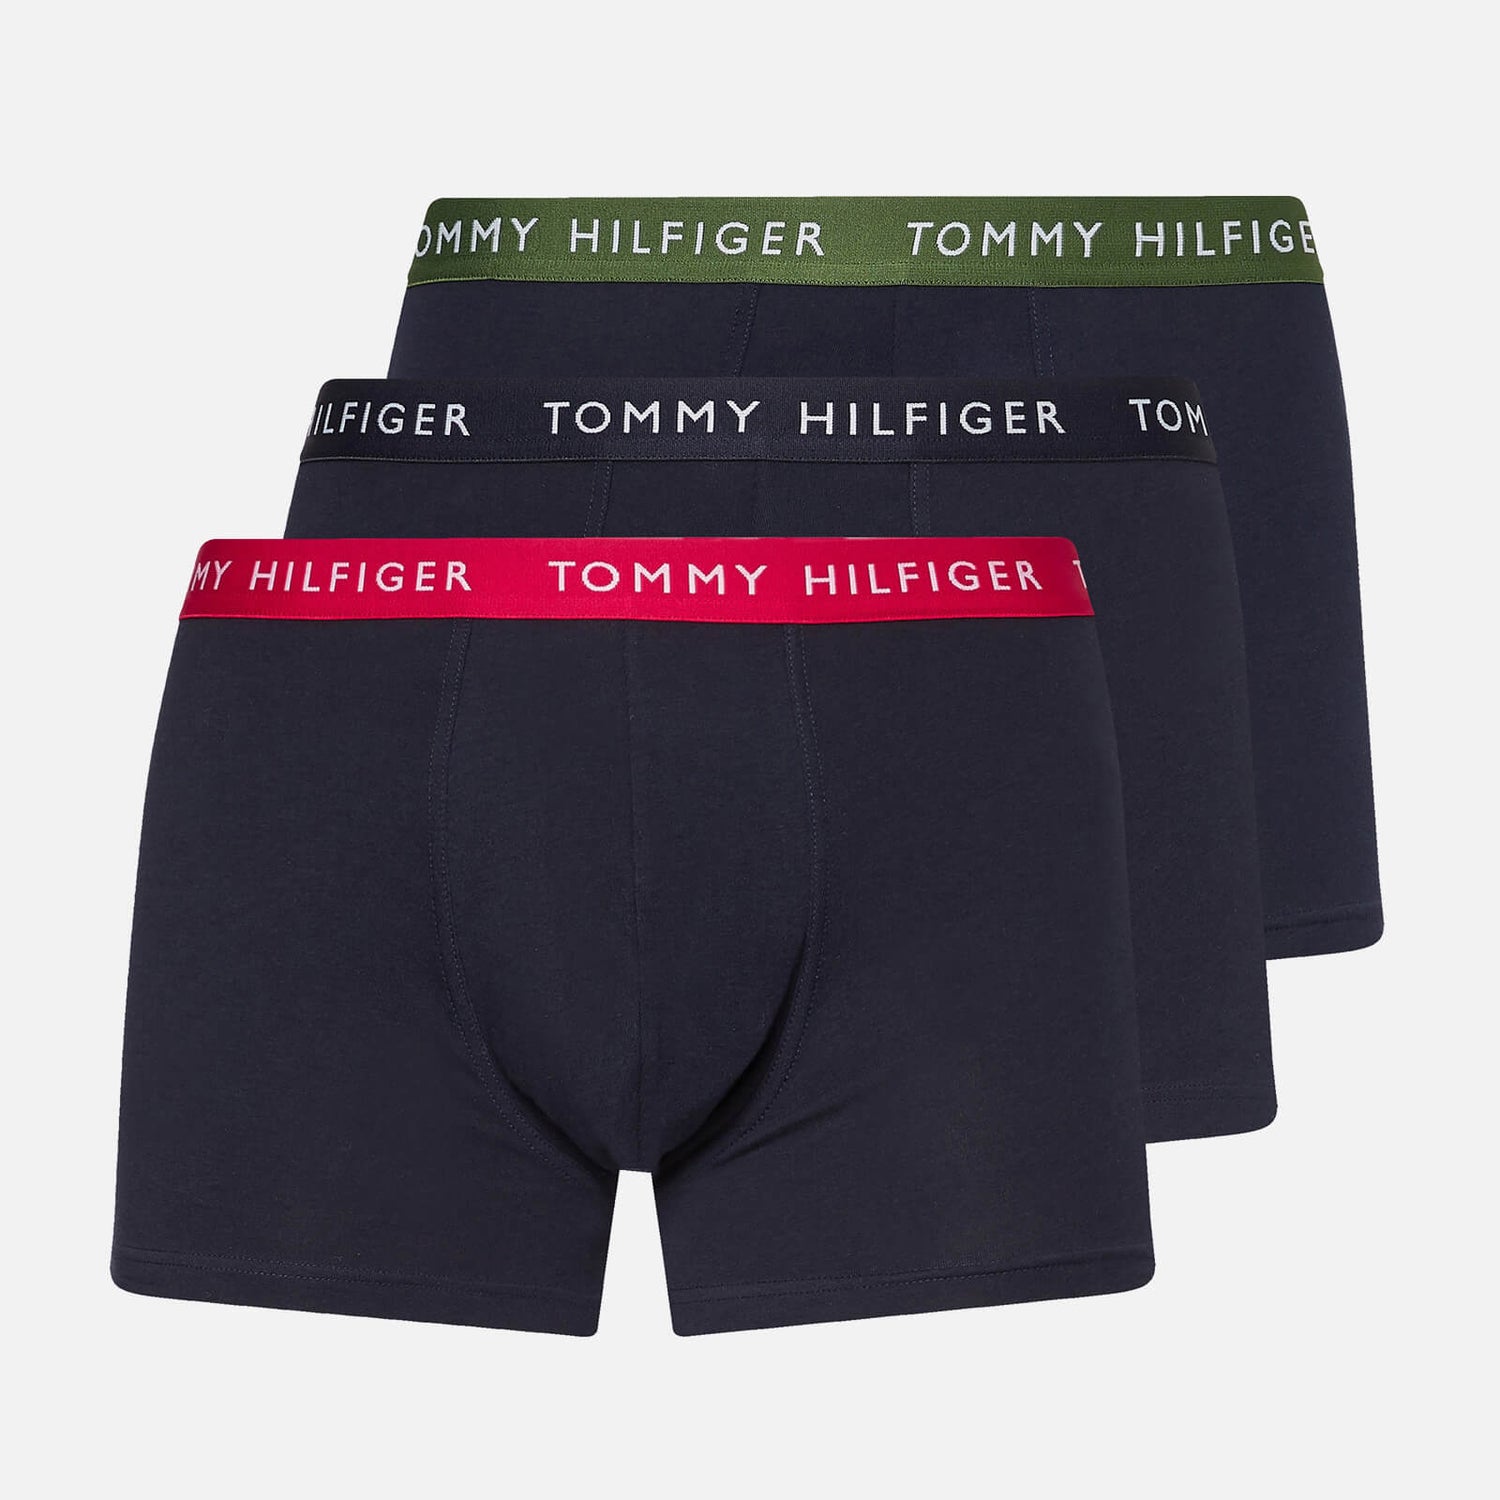 Tommy Hilfiger Men's 3-Pack Contrast Waistband Trunks - Blaze Red/Desert Sky/Golfway Green - S